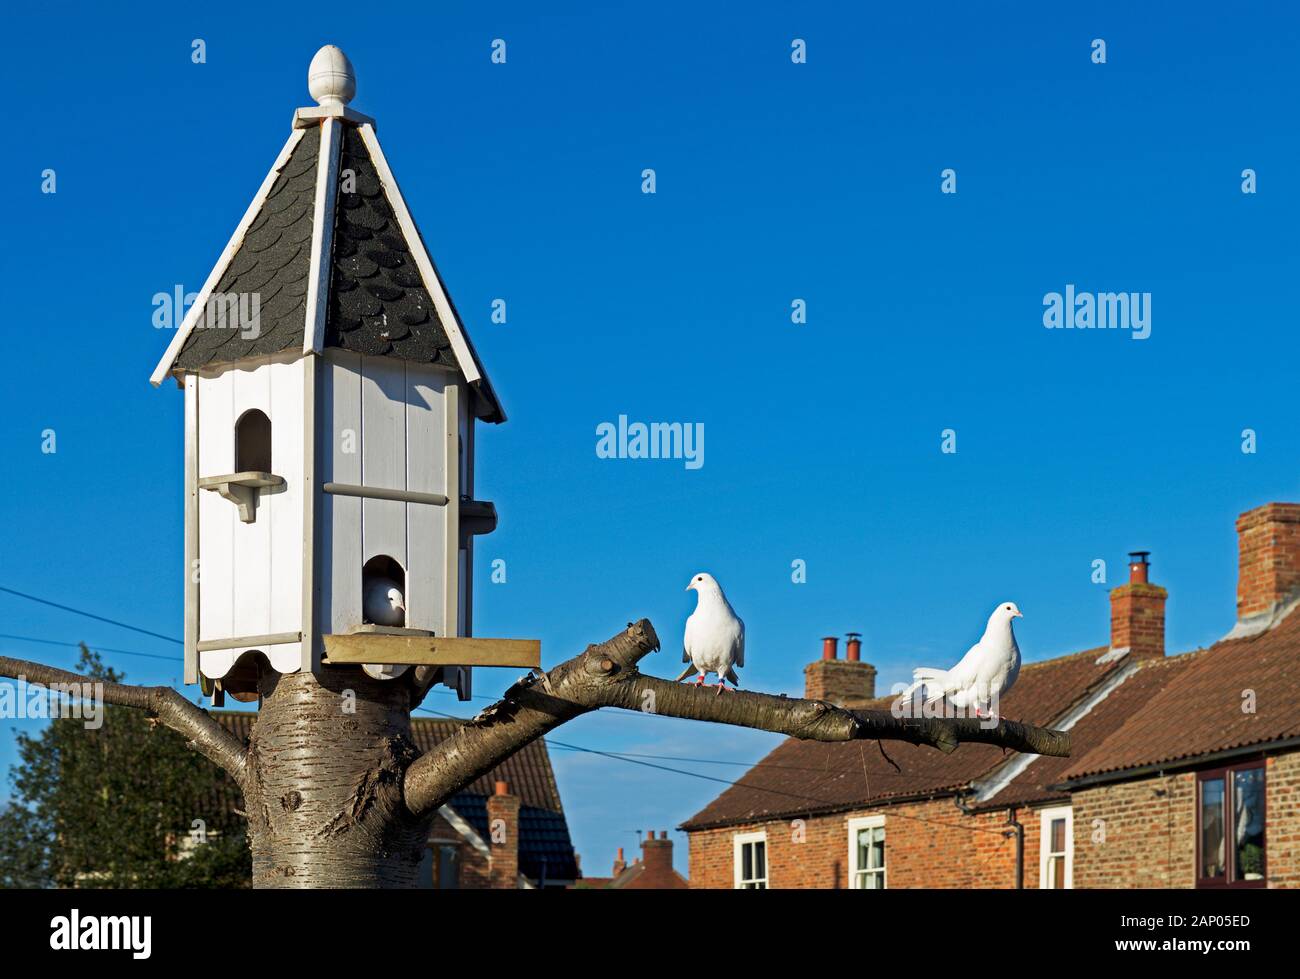 Colombes blanches et de la colombe-cote, England UK Banque D'Images